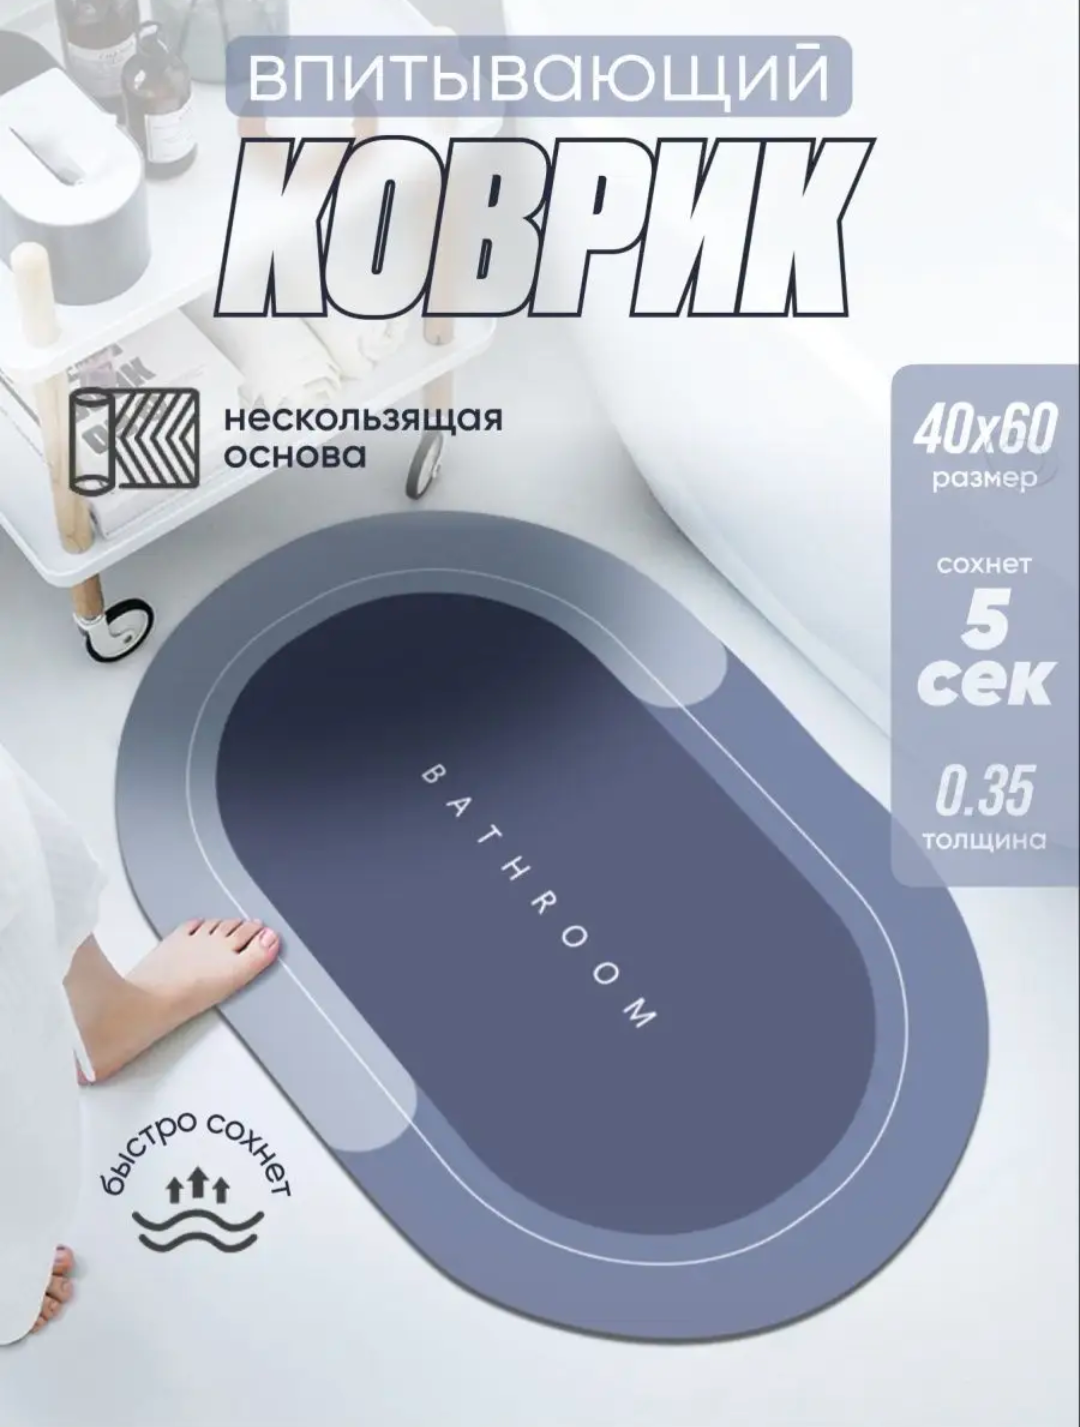 Коврик для ванной и туалета Ridberg PP 40*60 см серый / влаговпитывающий быстросохнущий противоскользящий прикроватный коврик